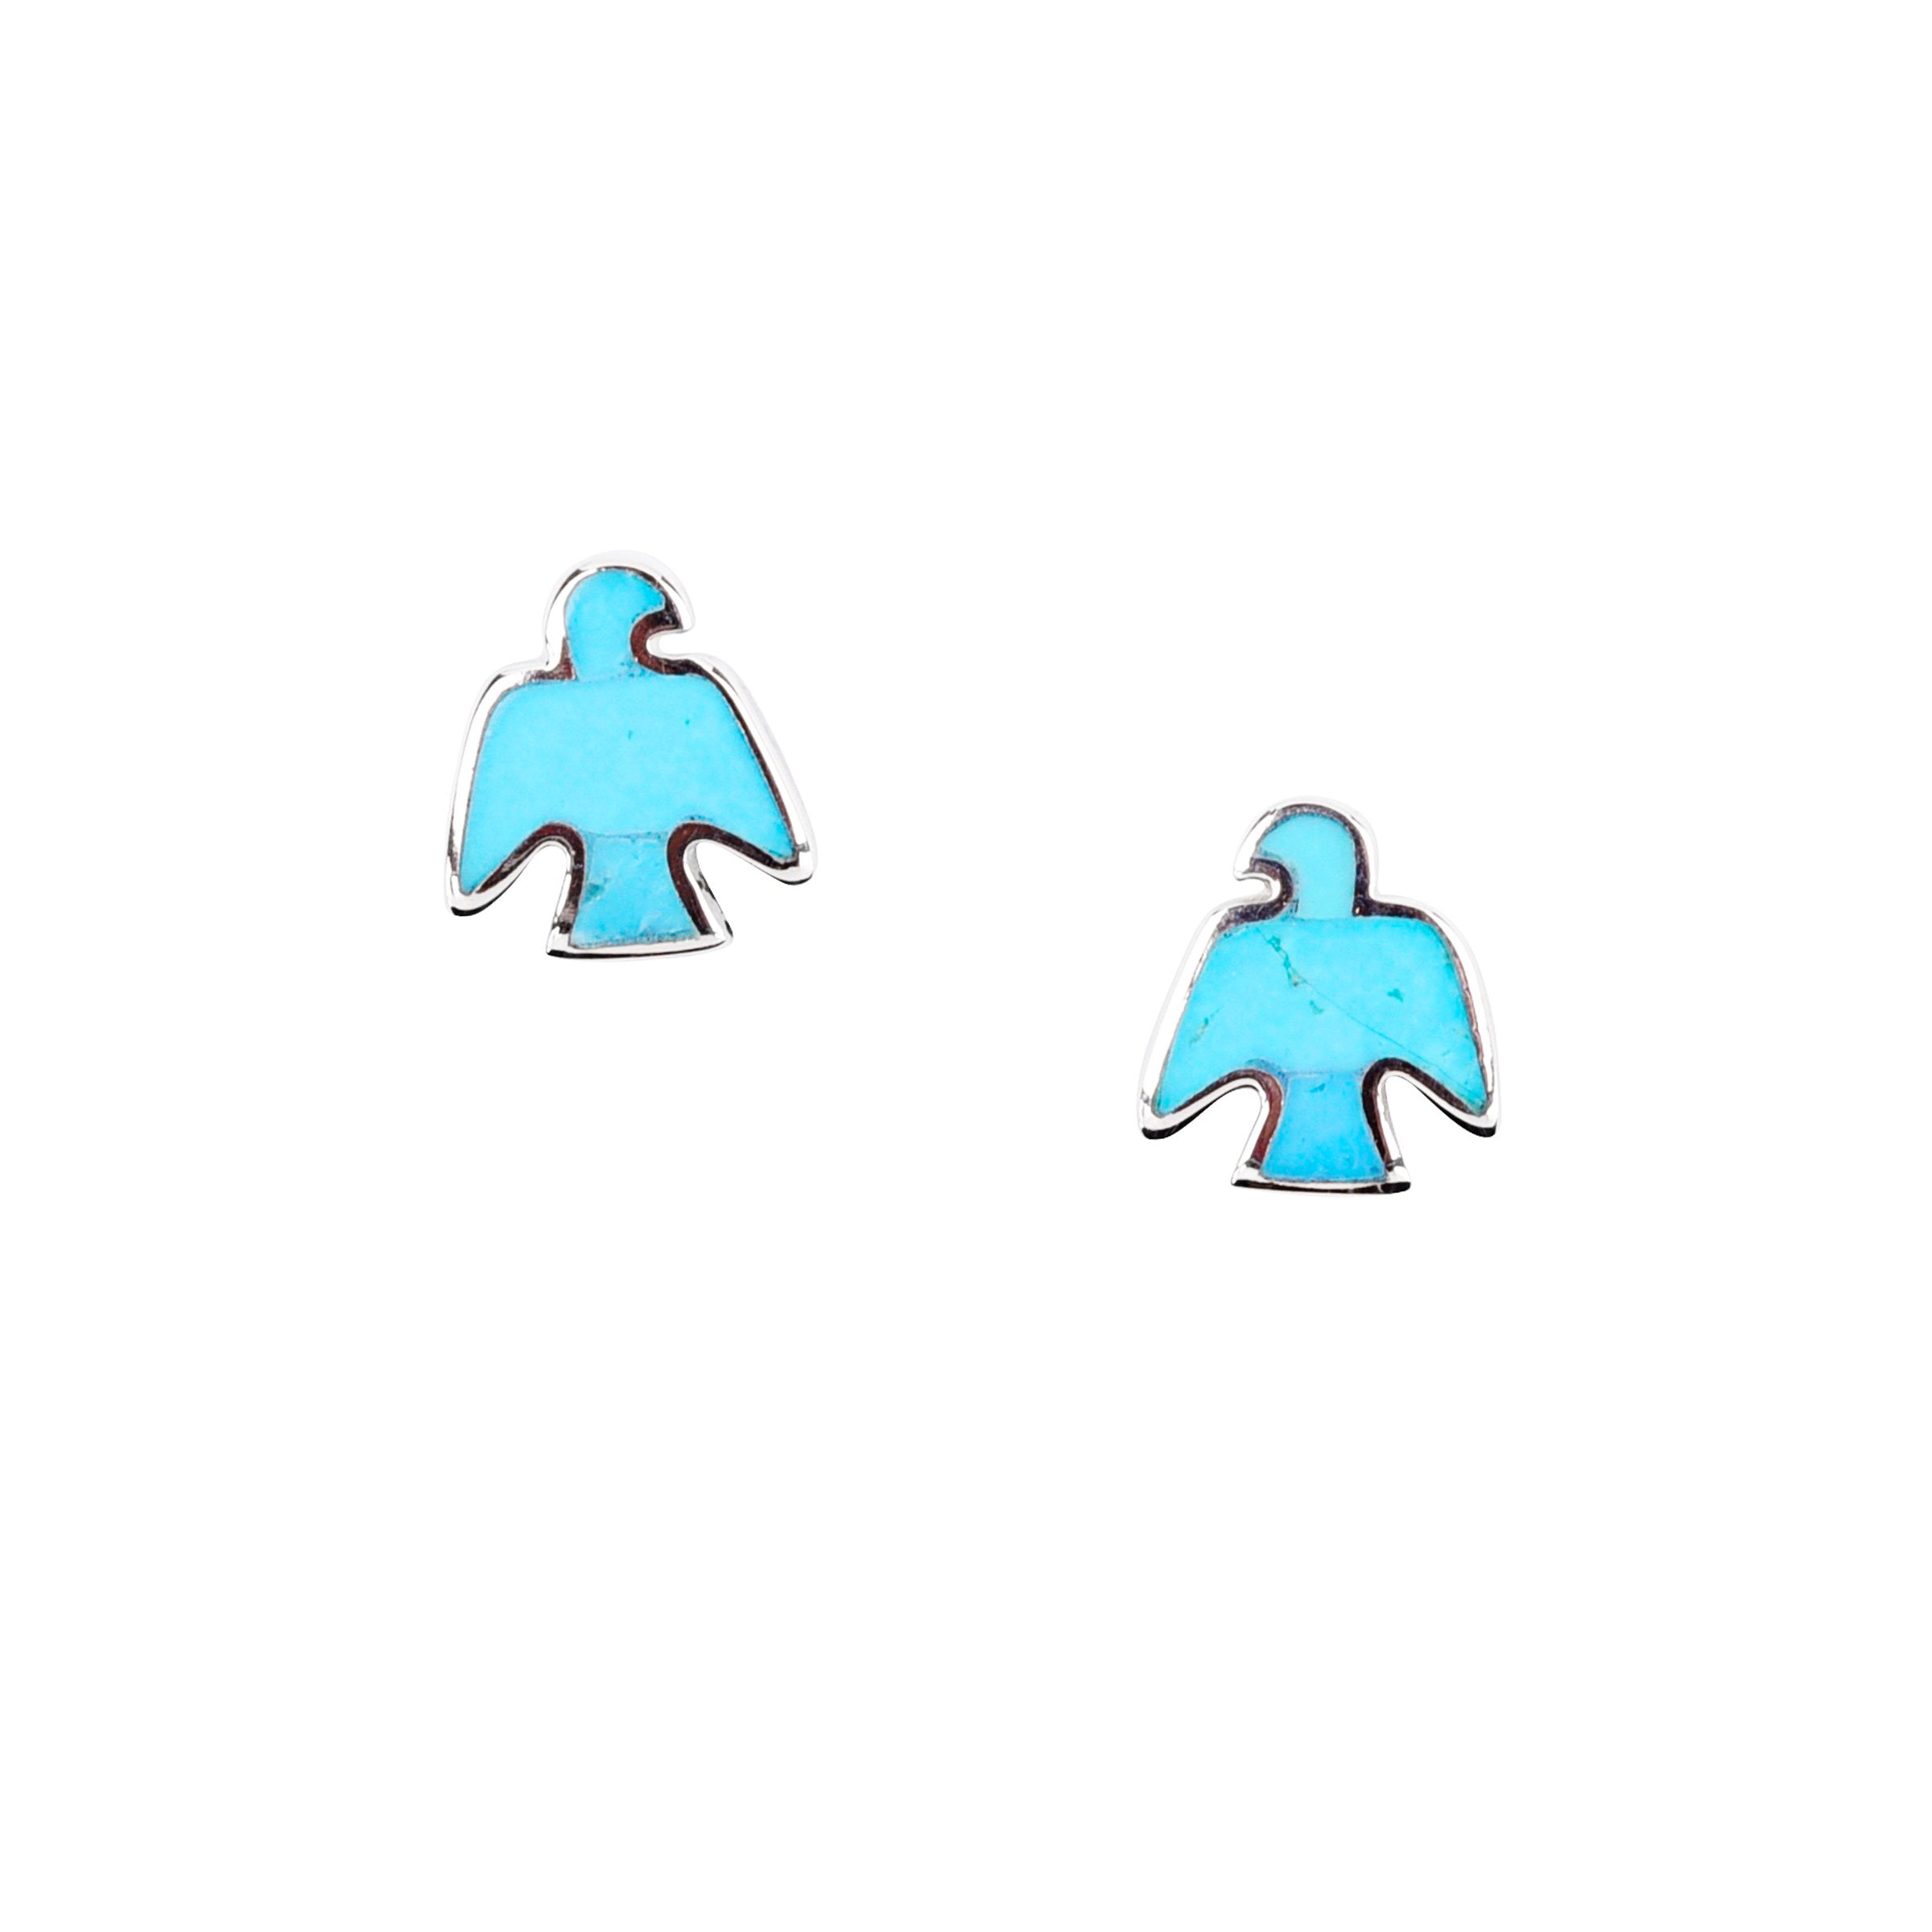 Peyote Bird Stud Earrings - Turquoise